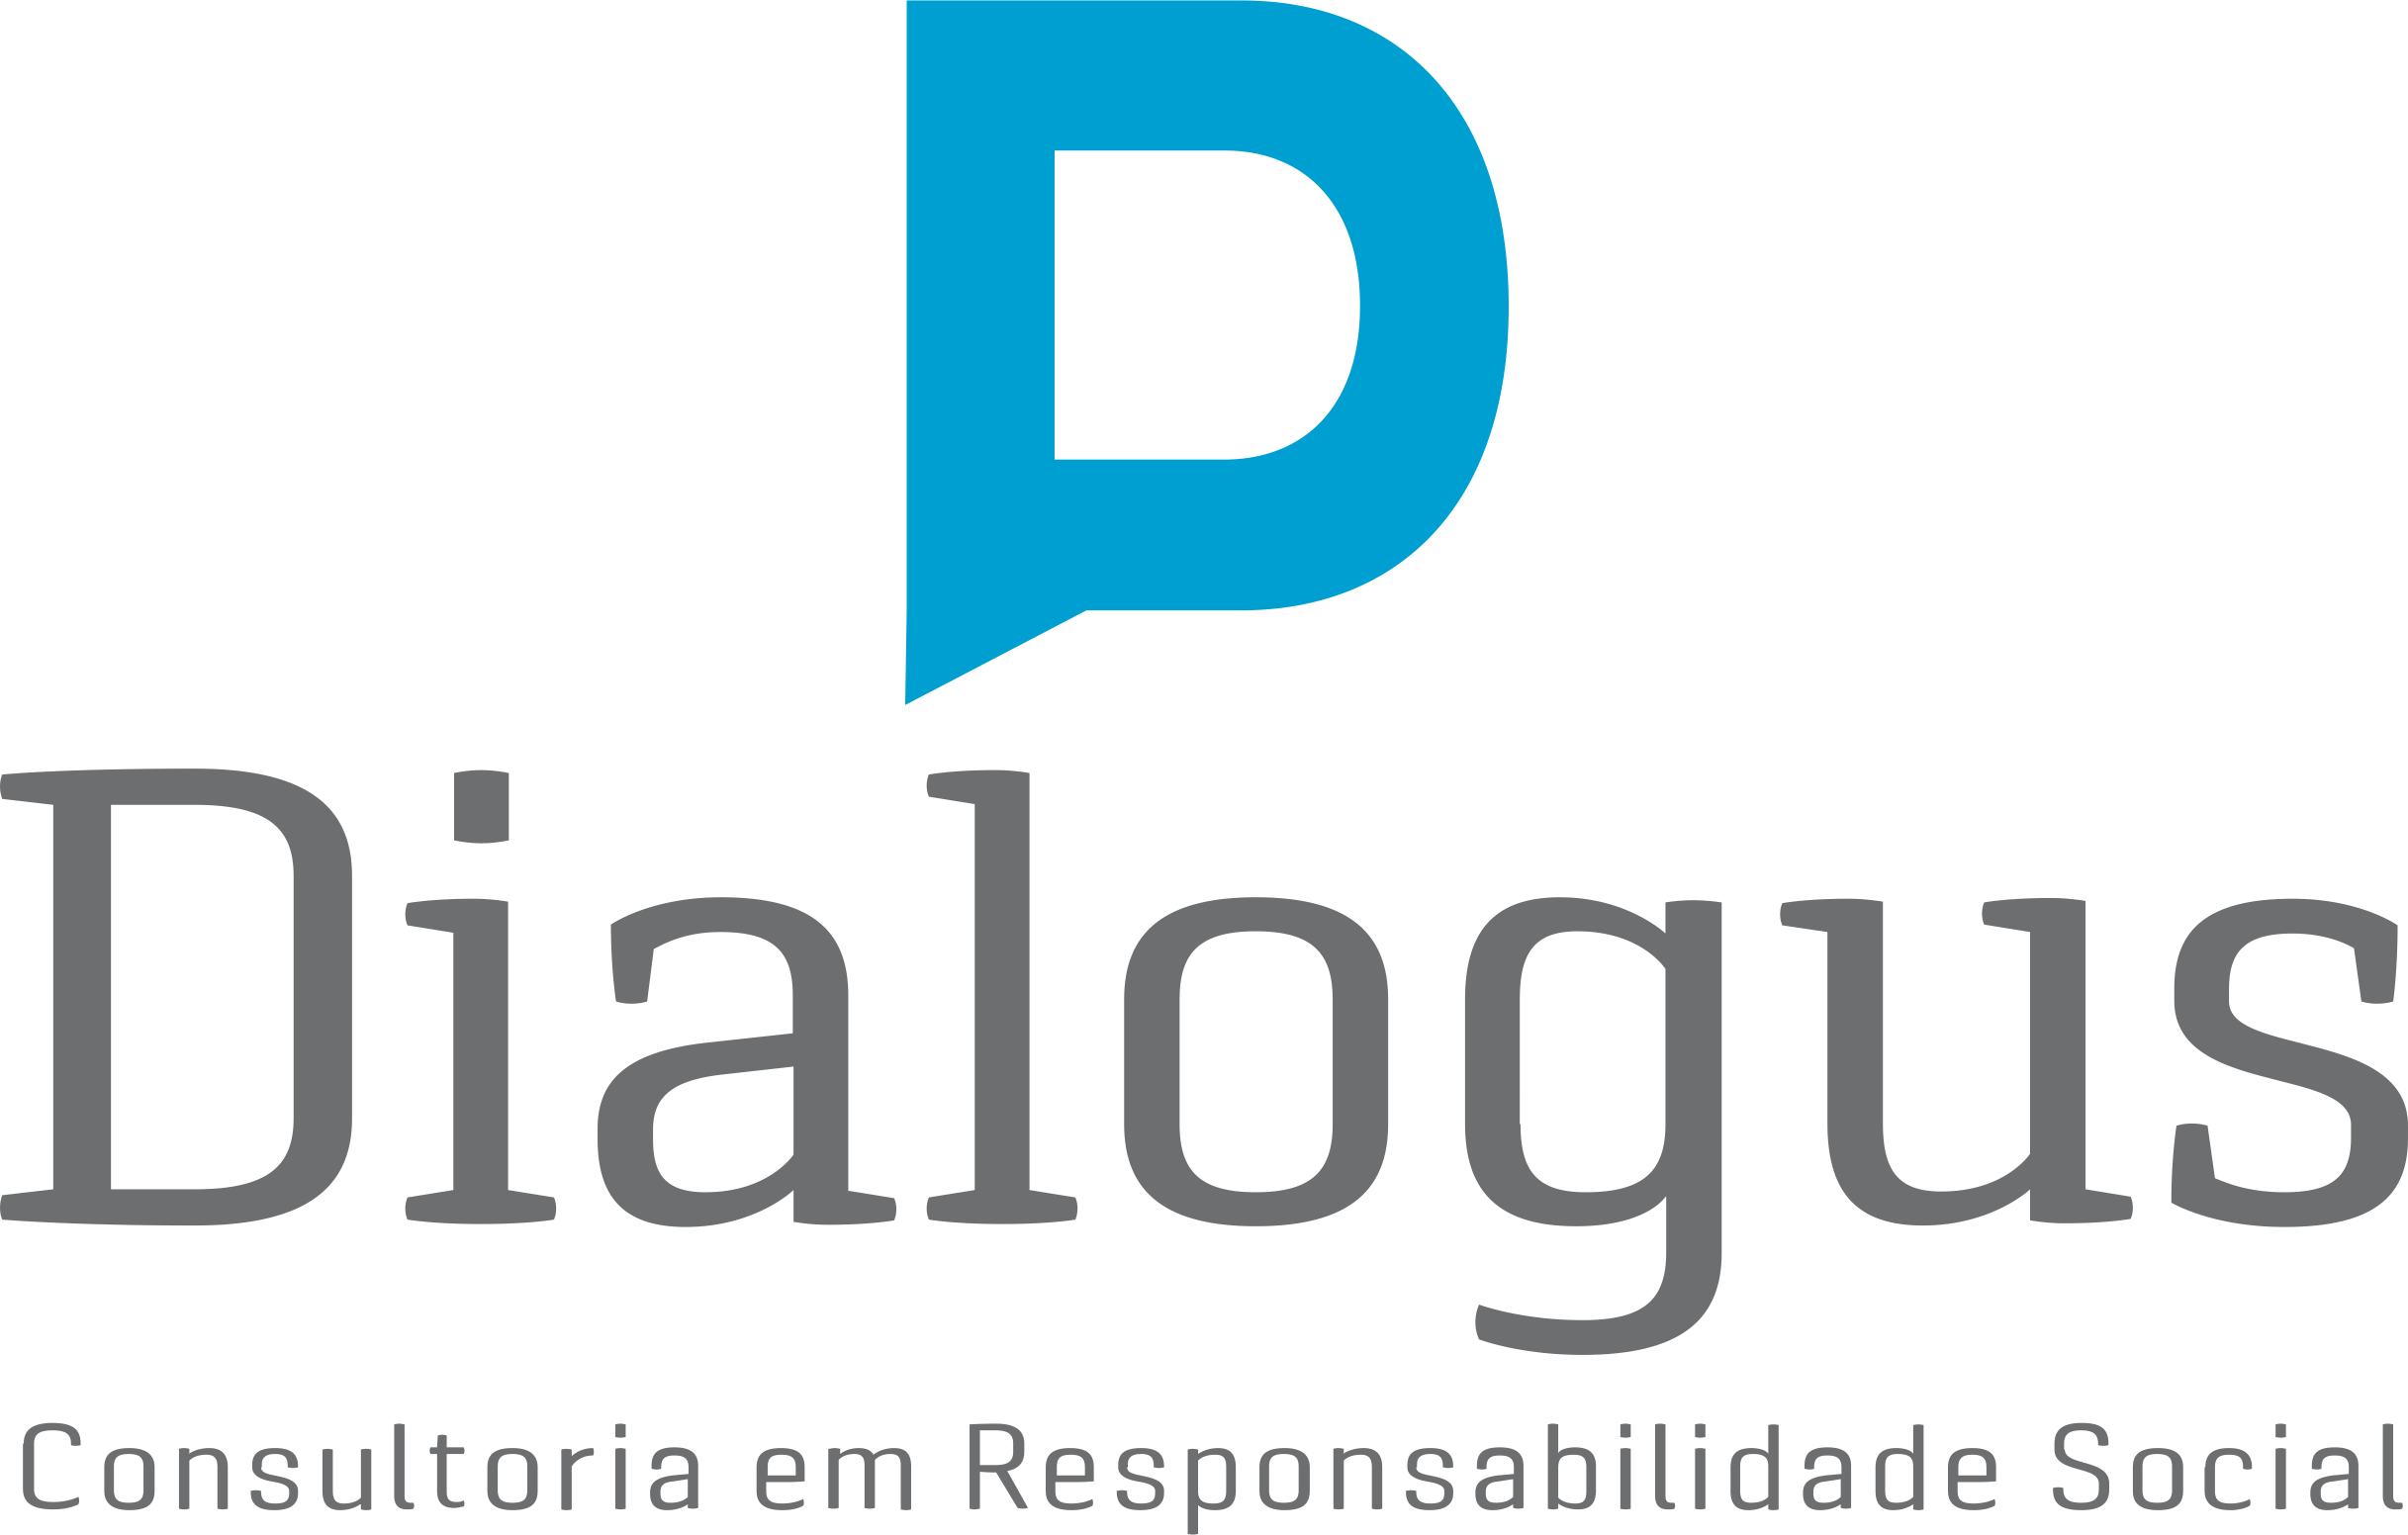 Dialogus Responsabilidade Social - Consultoria - Programa de Integridade - Fortaleza/CE